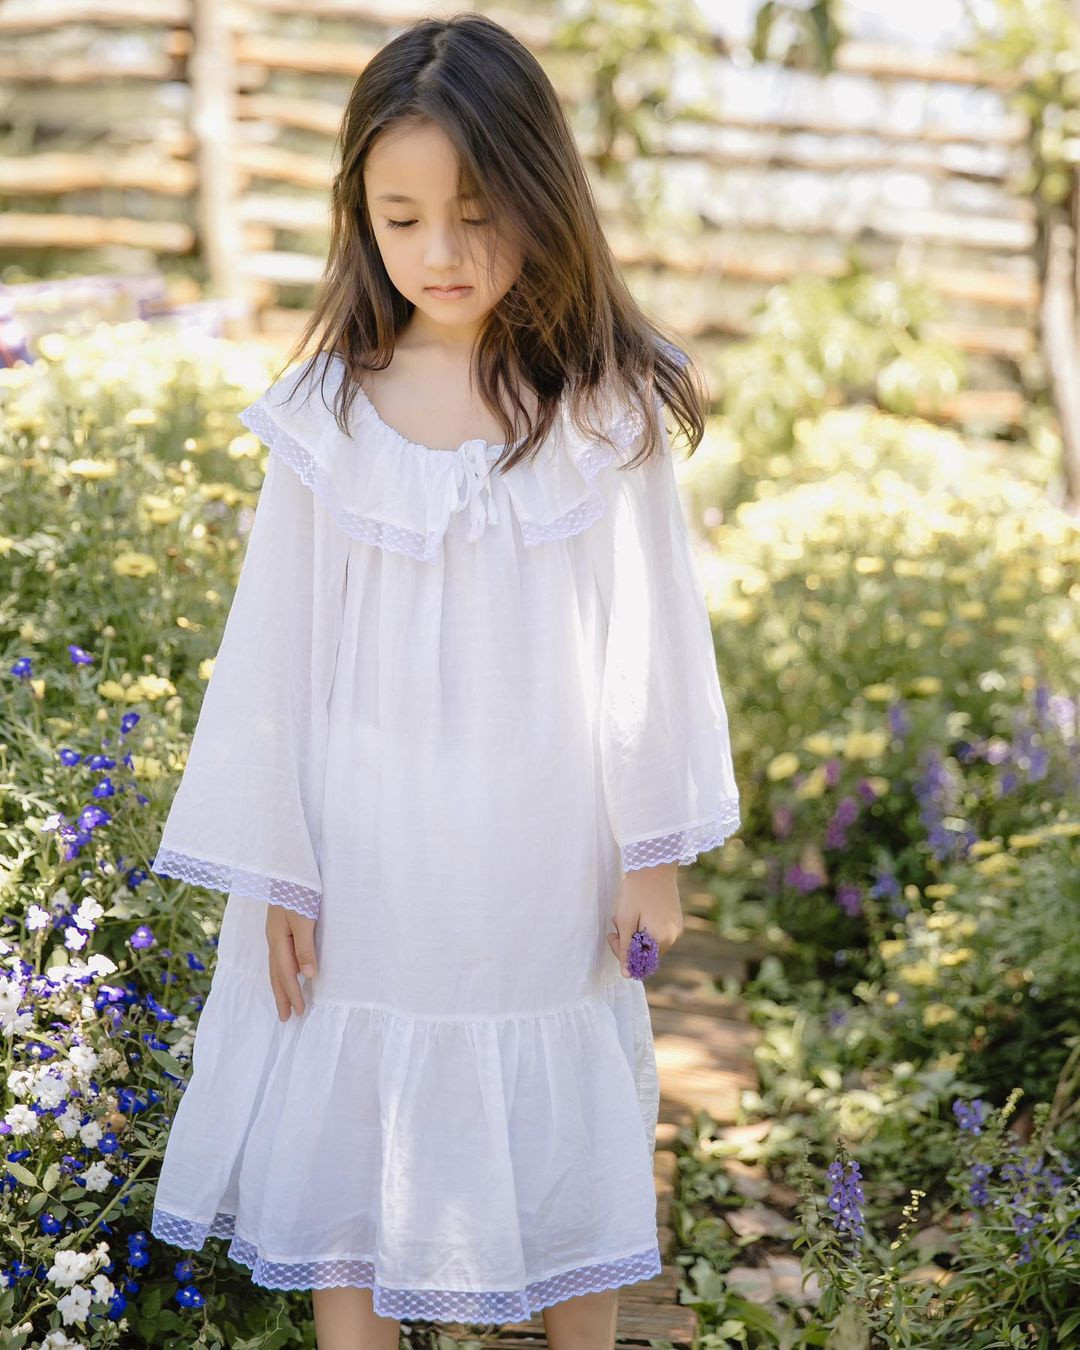 Con gái 5 tuổi của Hoa hậu Hà Kiều Anh xinh như thiên thần - 4